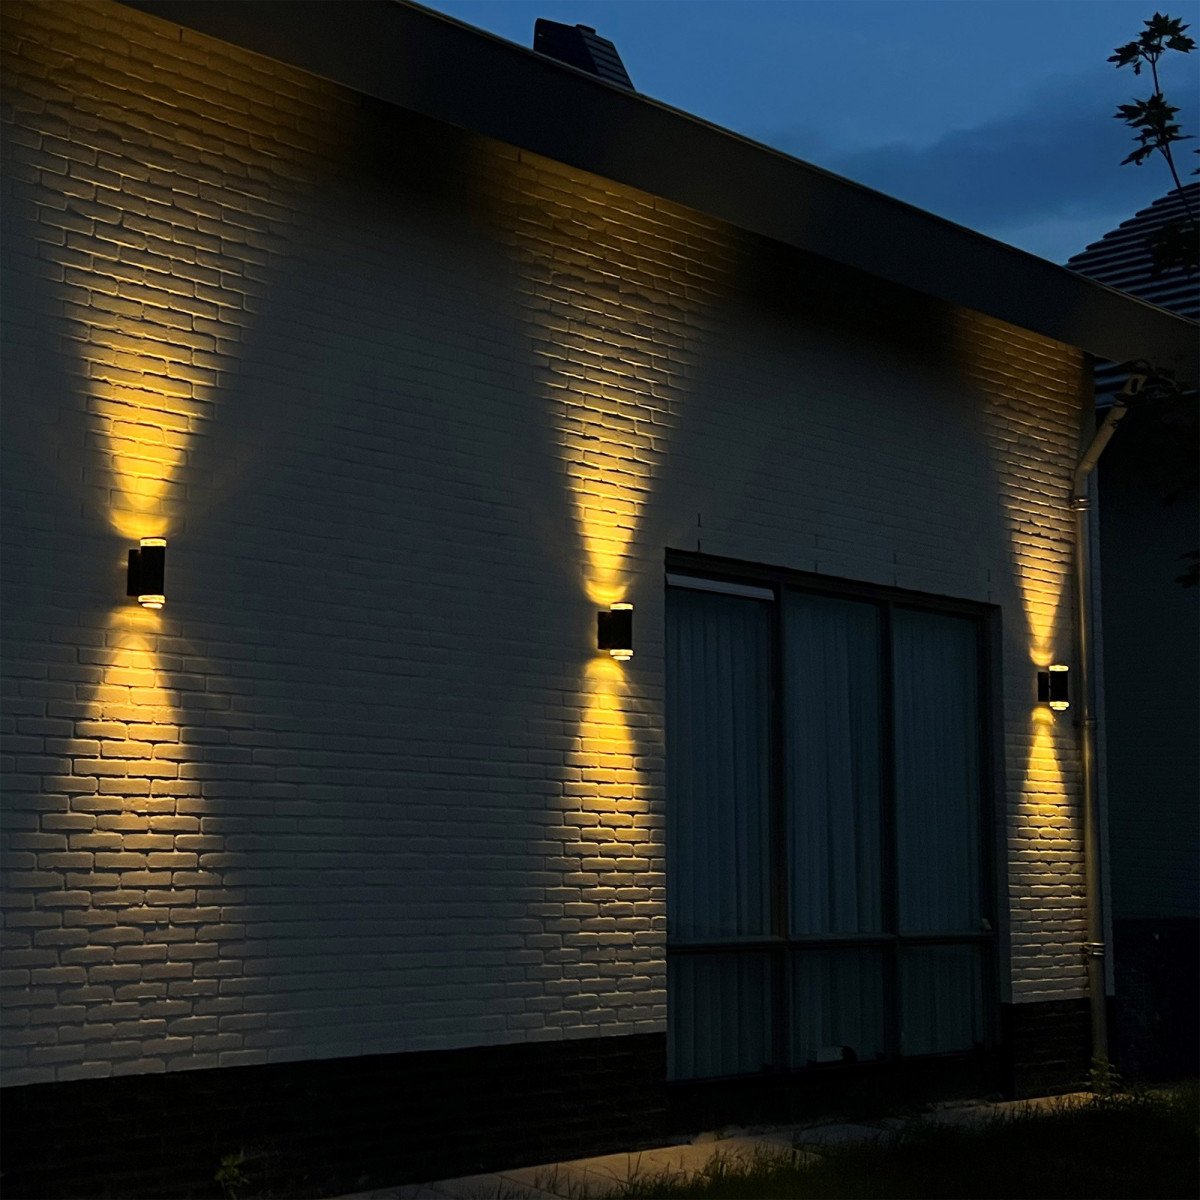 Lampe d'extérieur Ambient en acier galvanisé Up & Downlighter, beau spot mural de la marque KS Lighting à acheter chez Nostalux.  